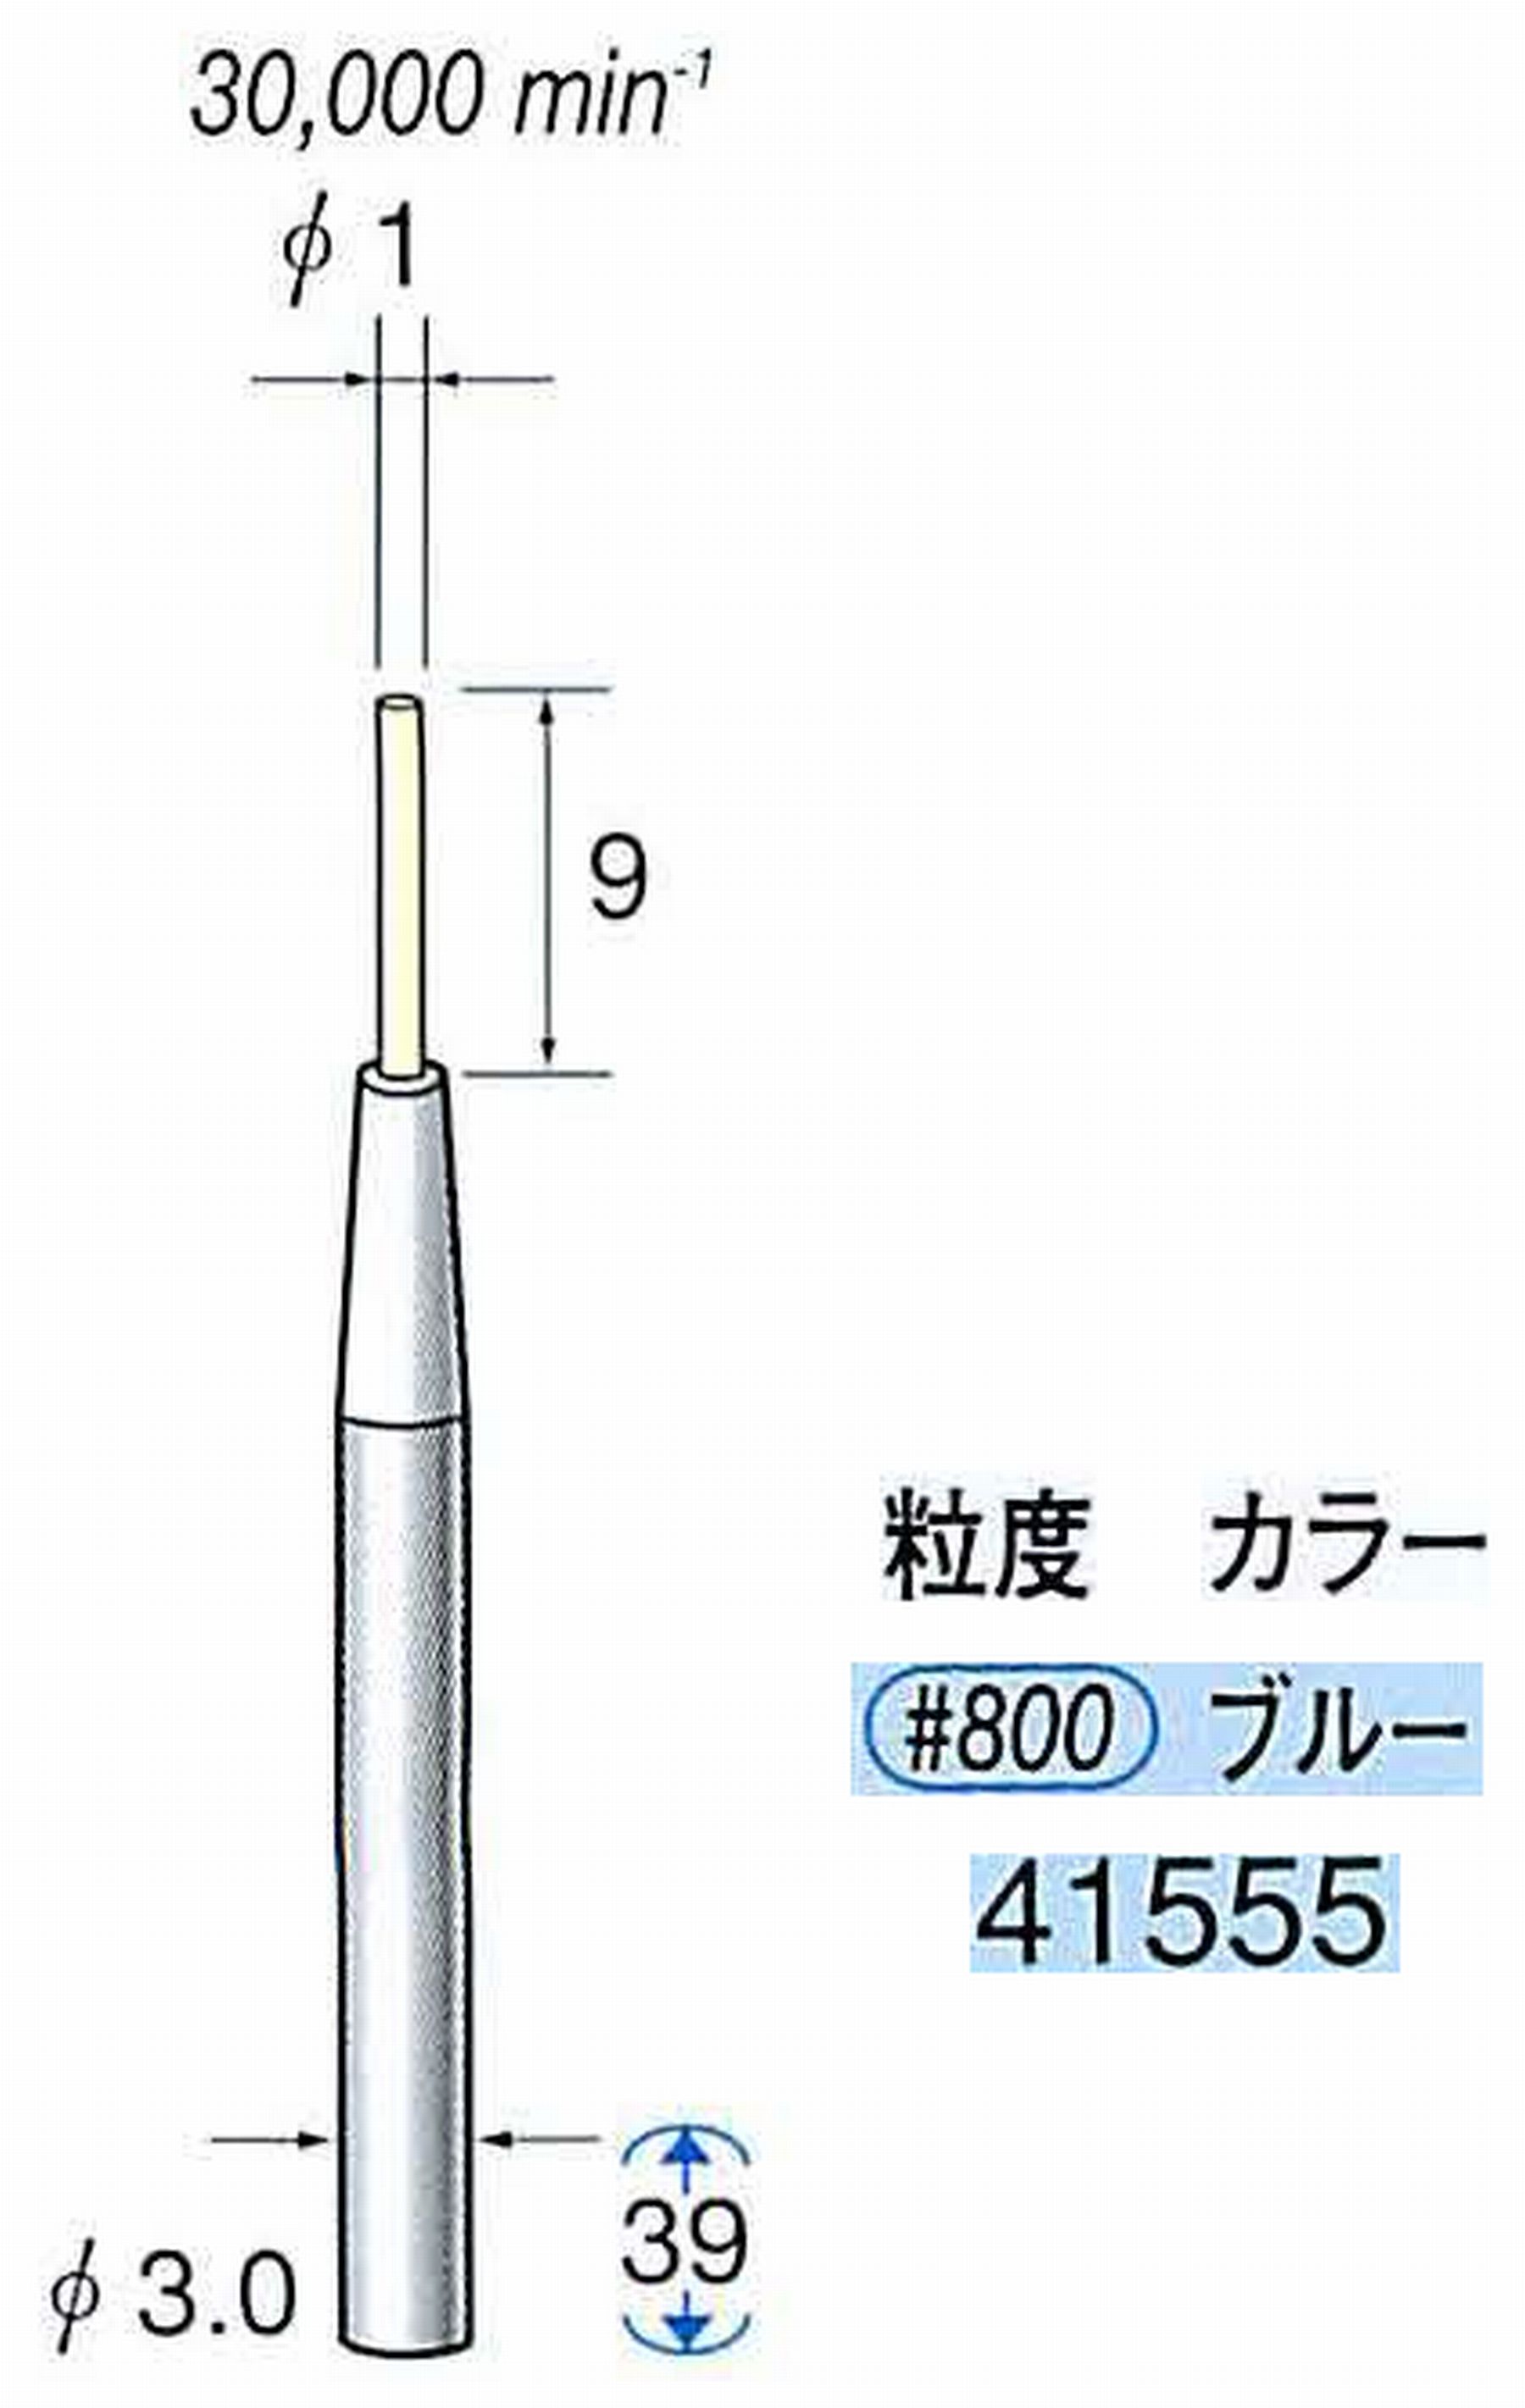 ナカニシ/NAKANISHI セラファイバー精密軸付砥石(カラー ブルー) 軸径(シャンク) φ3.0mm 41555